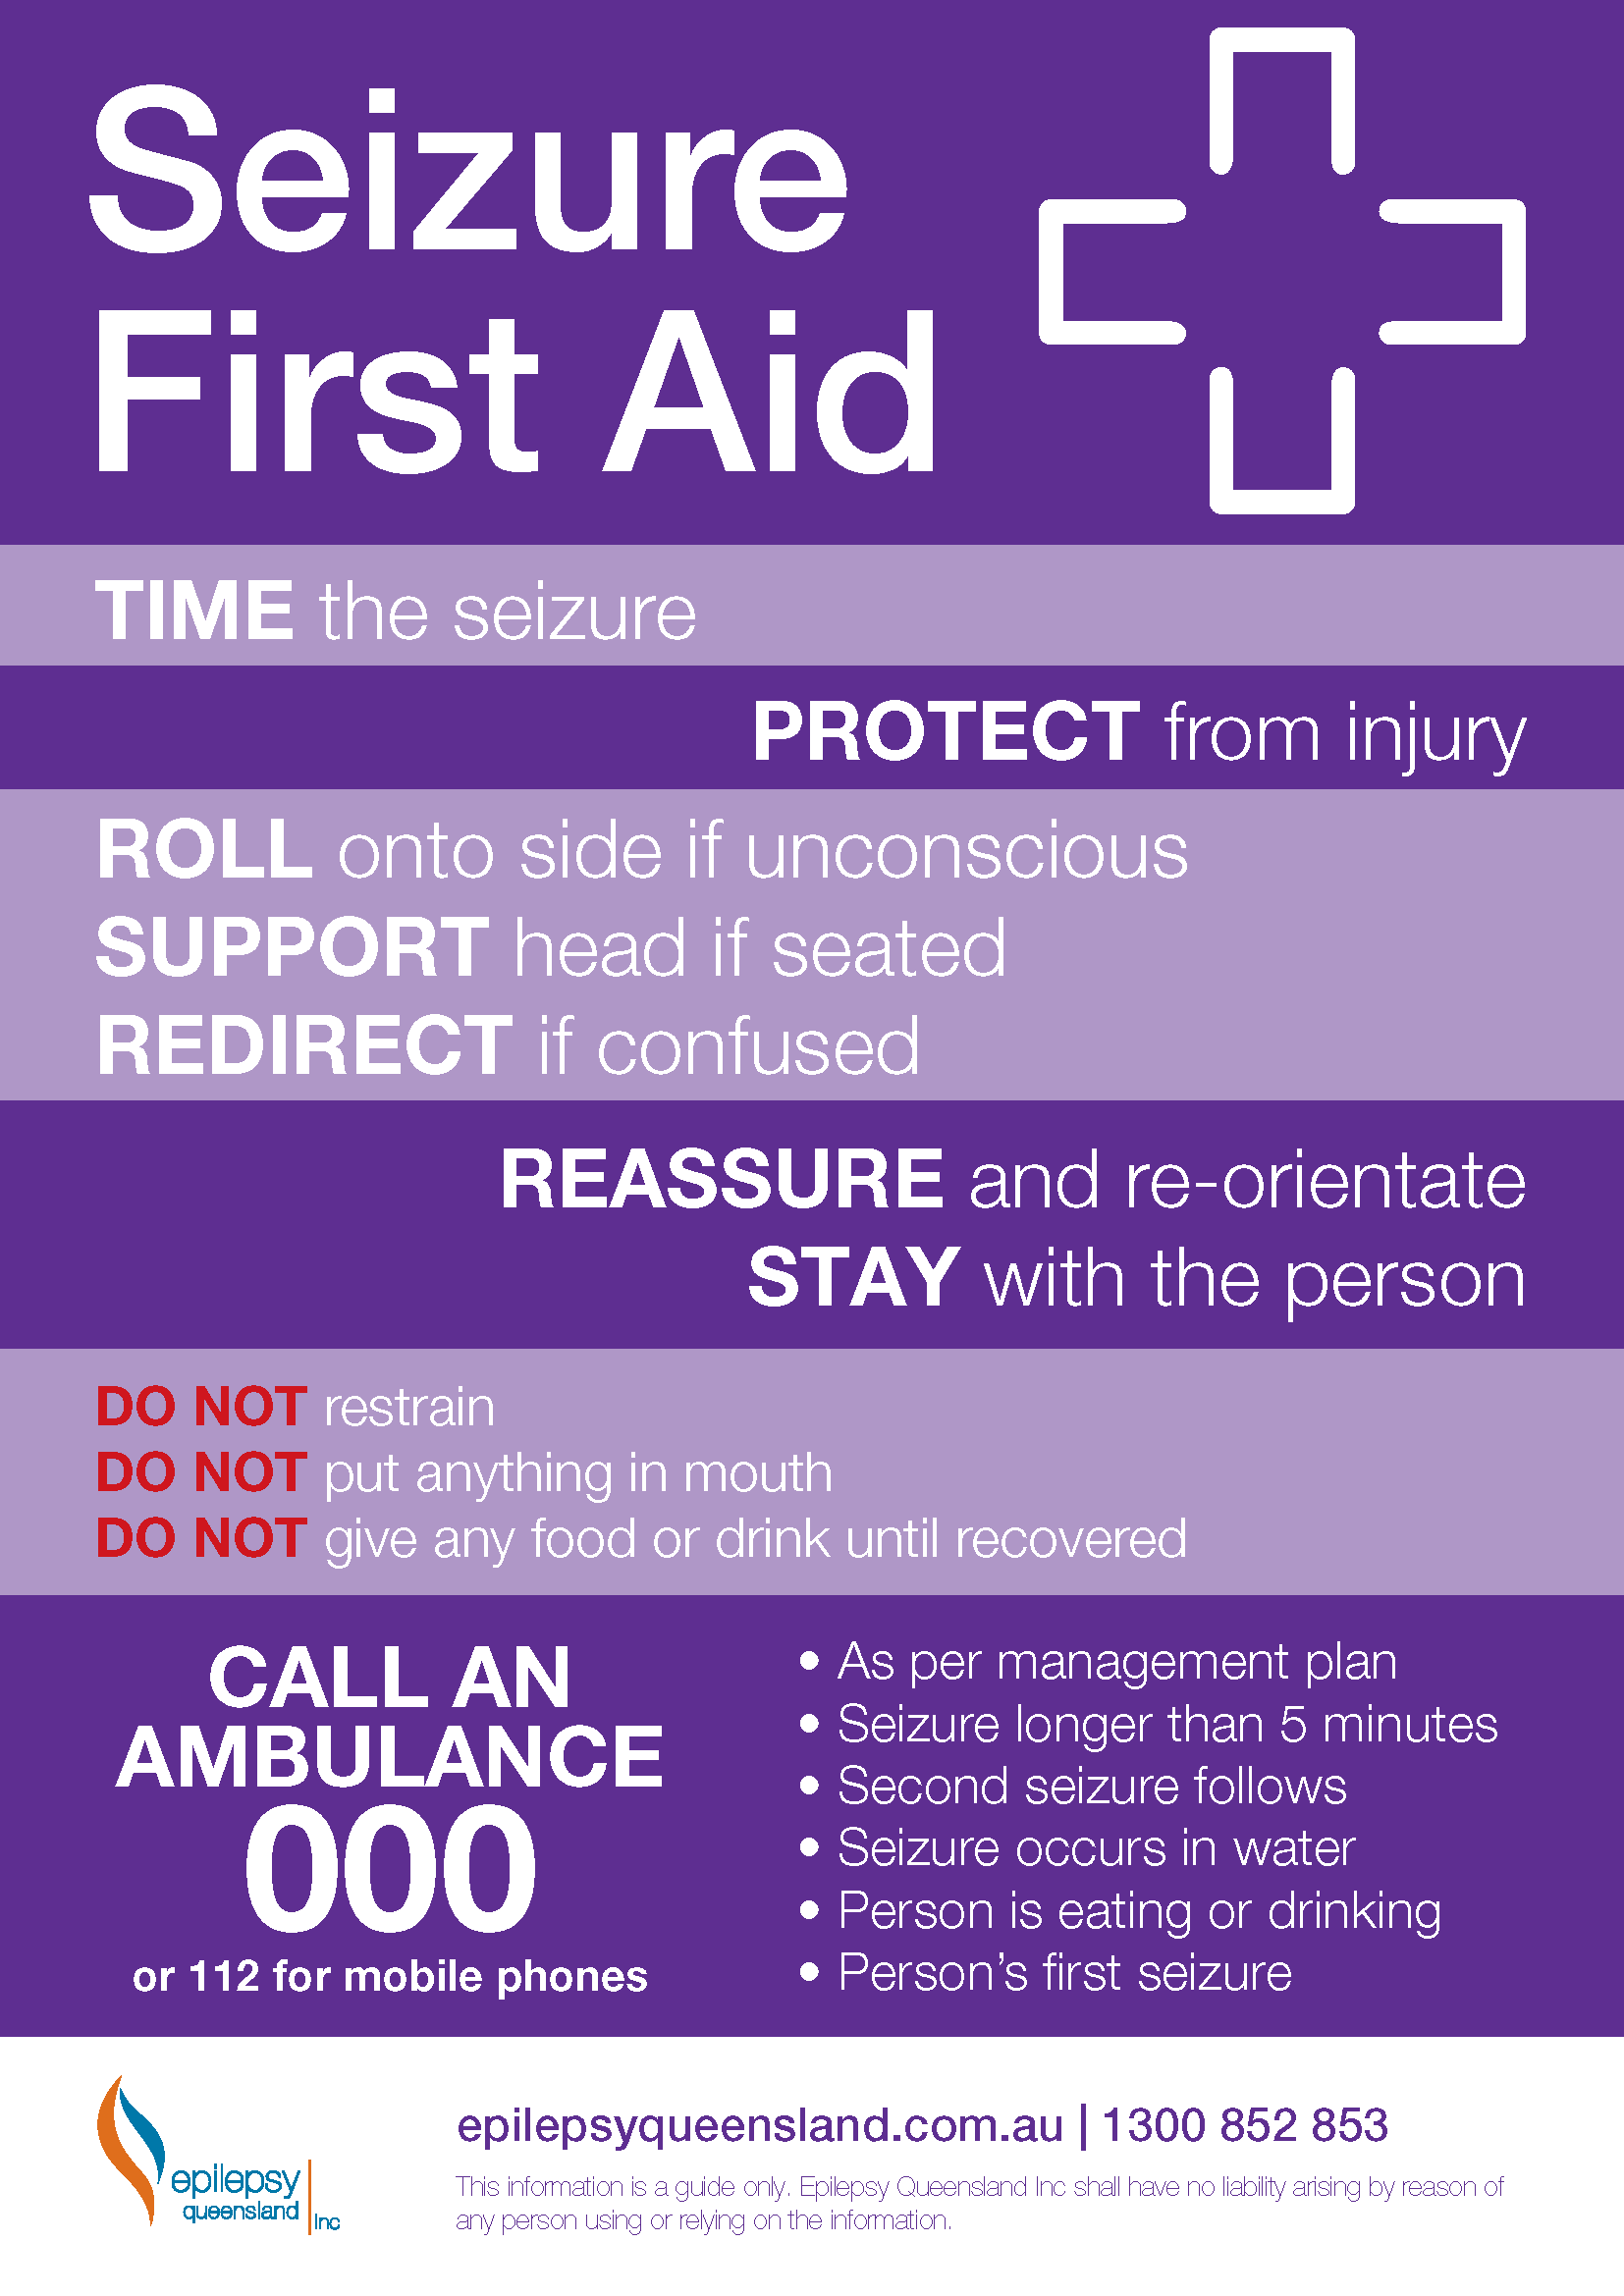 seizure first aid